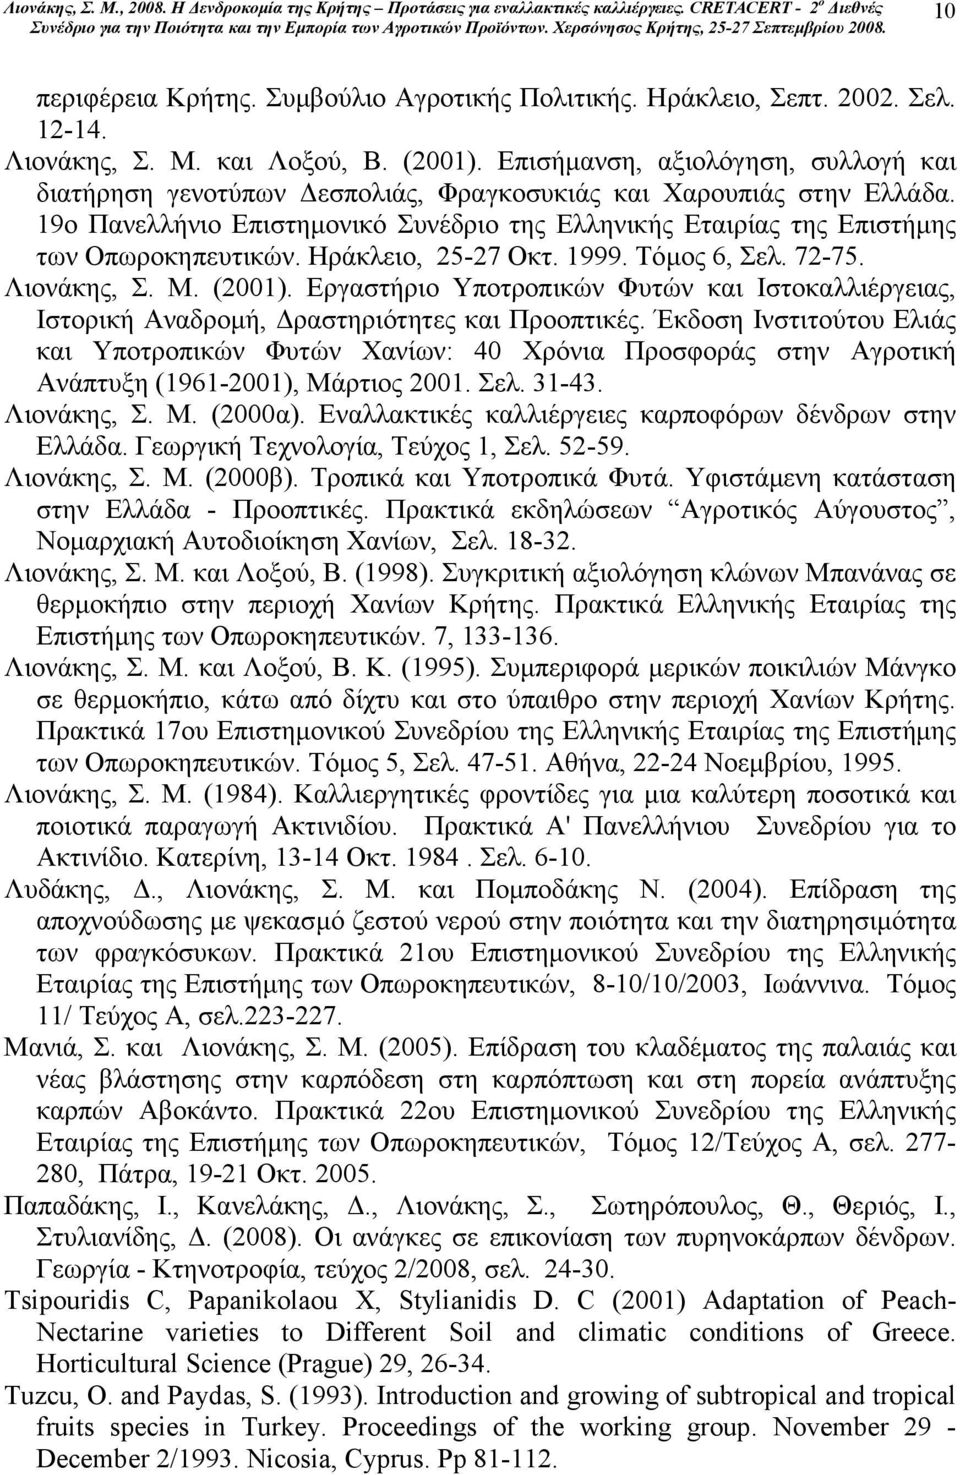 Ηράκλειο, 25-27 Οκτ. 1999. Τόµος 6, Σελ. 72-75. Λιονάκης, Σ. Μ. (2001). Εργαστήριο Υποτροπικών Φυτών και Ιστοκαλλιέργειας, Ιστορική Αναδροµή, ραστηριότητες και Προοπτικές.